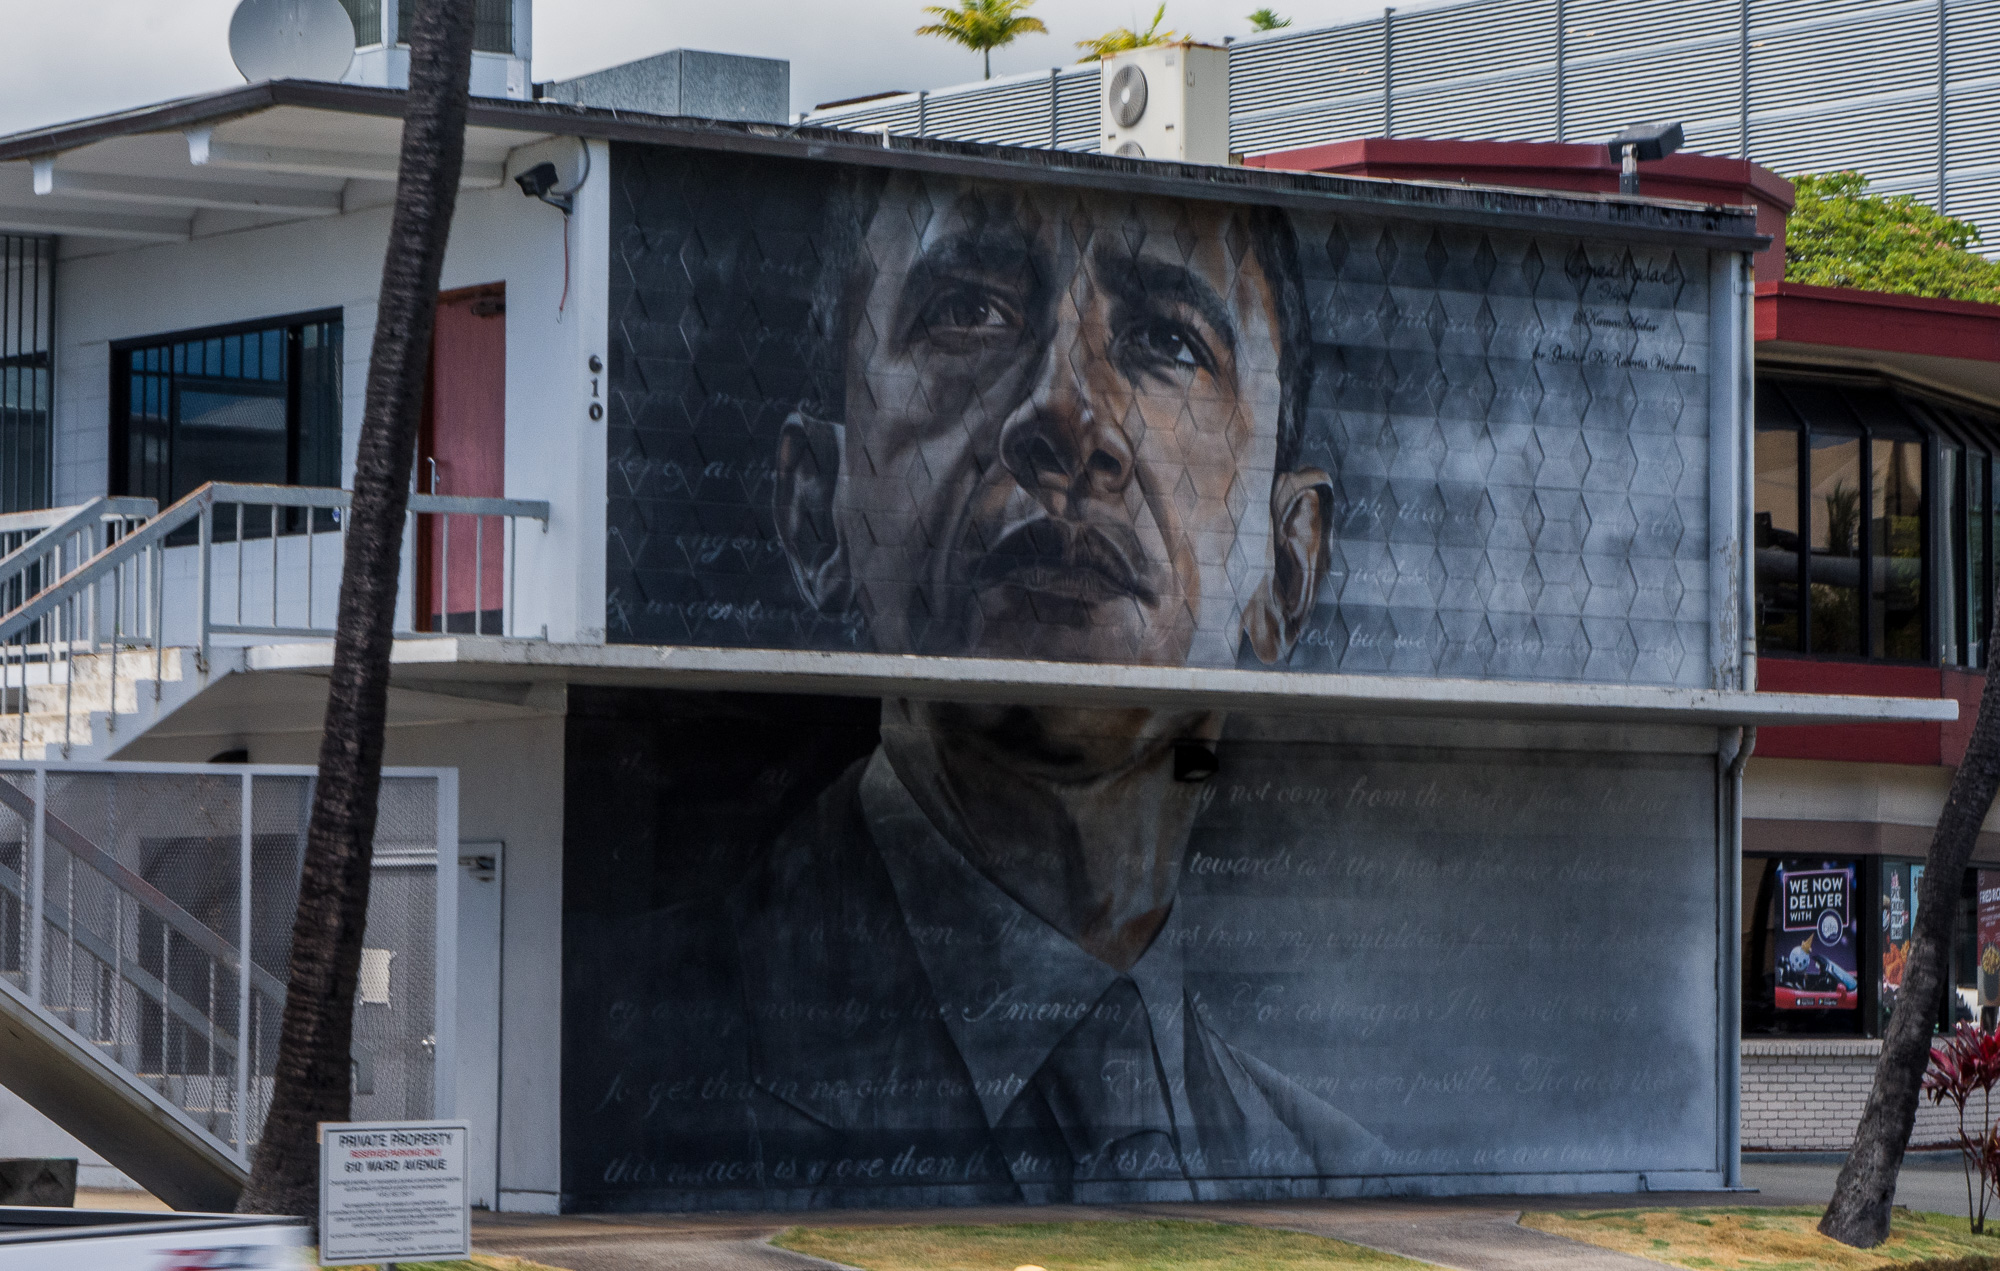 Street art in Honolulu